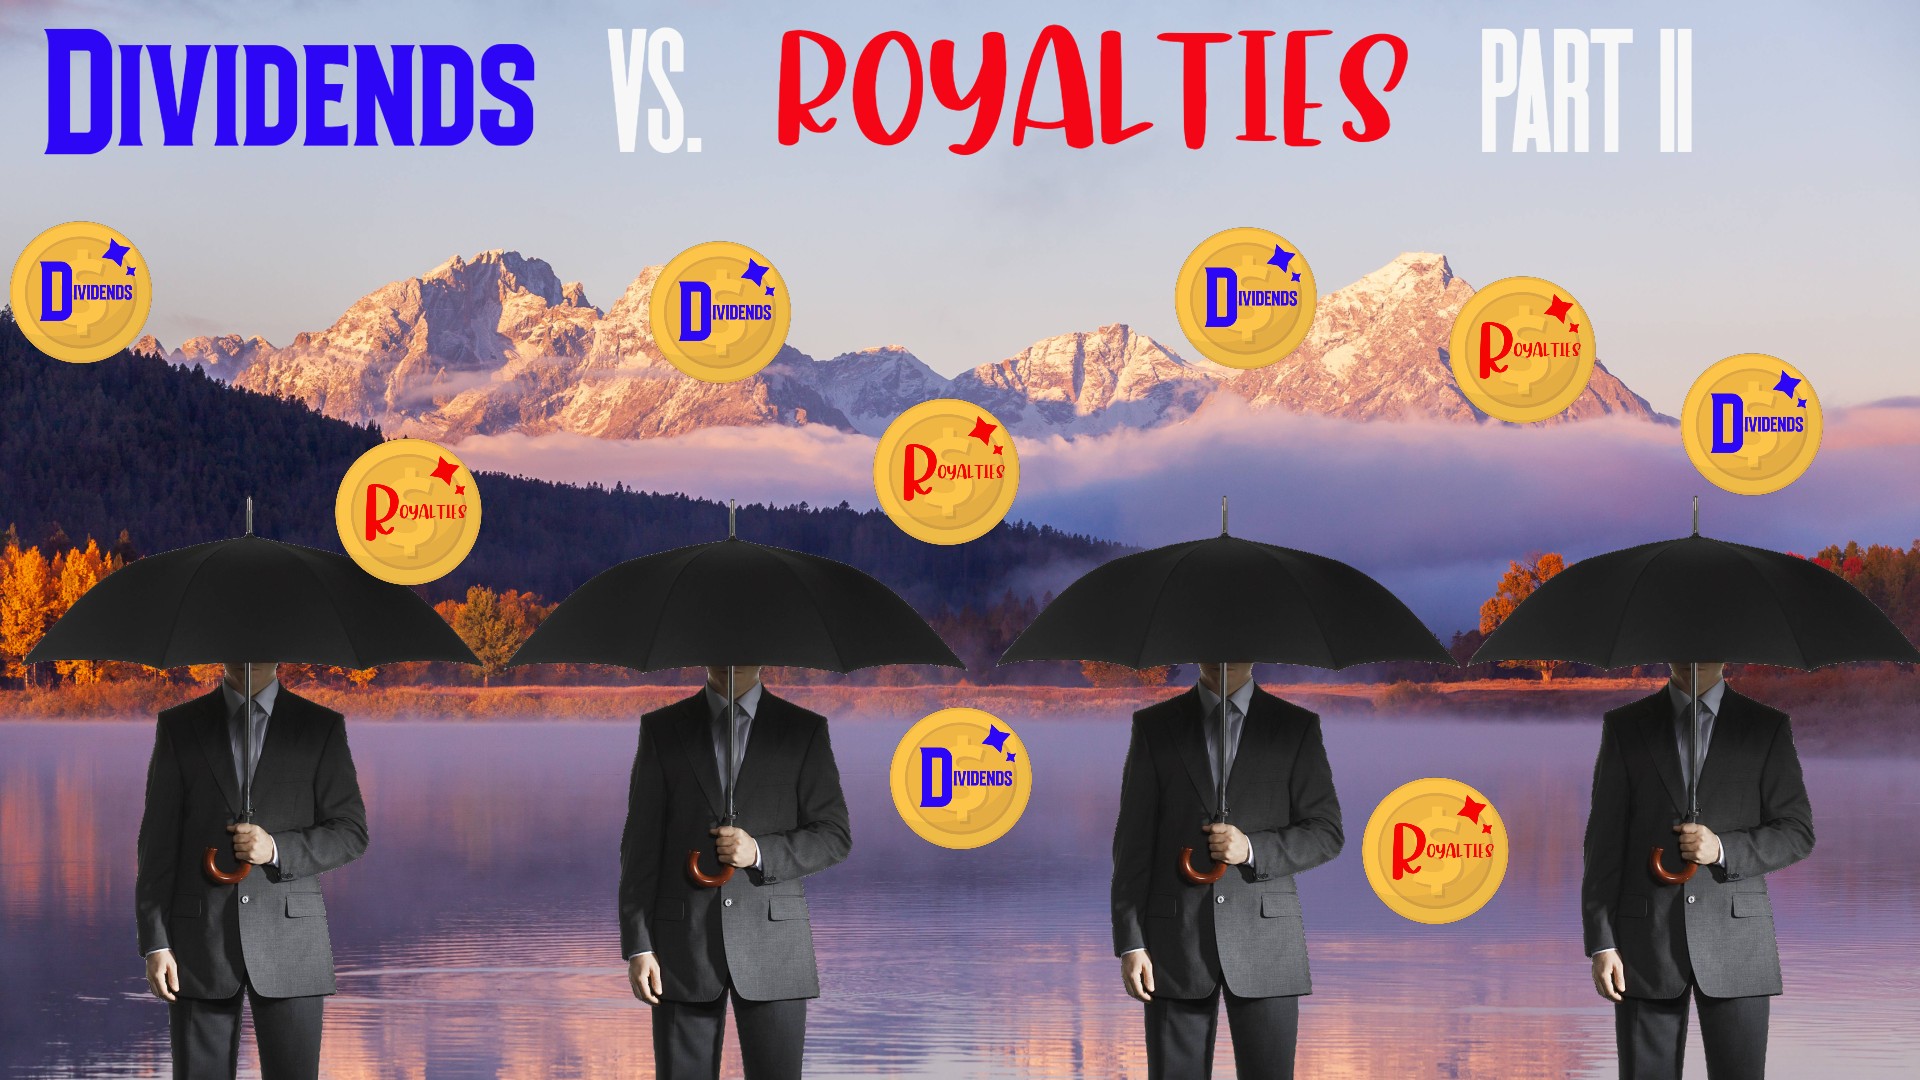 Dividends vs. Royalties part II